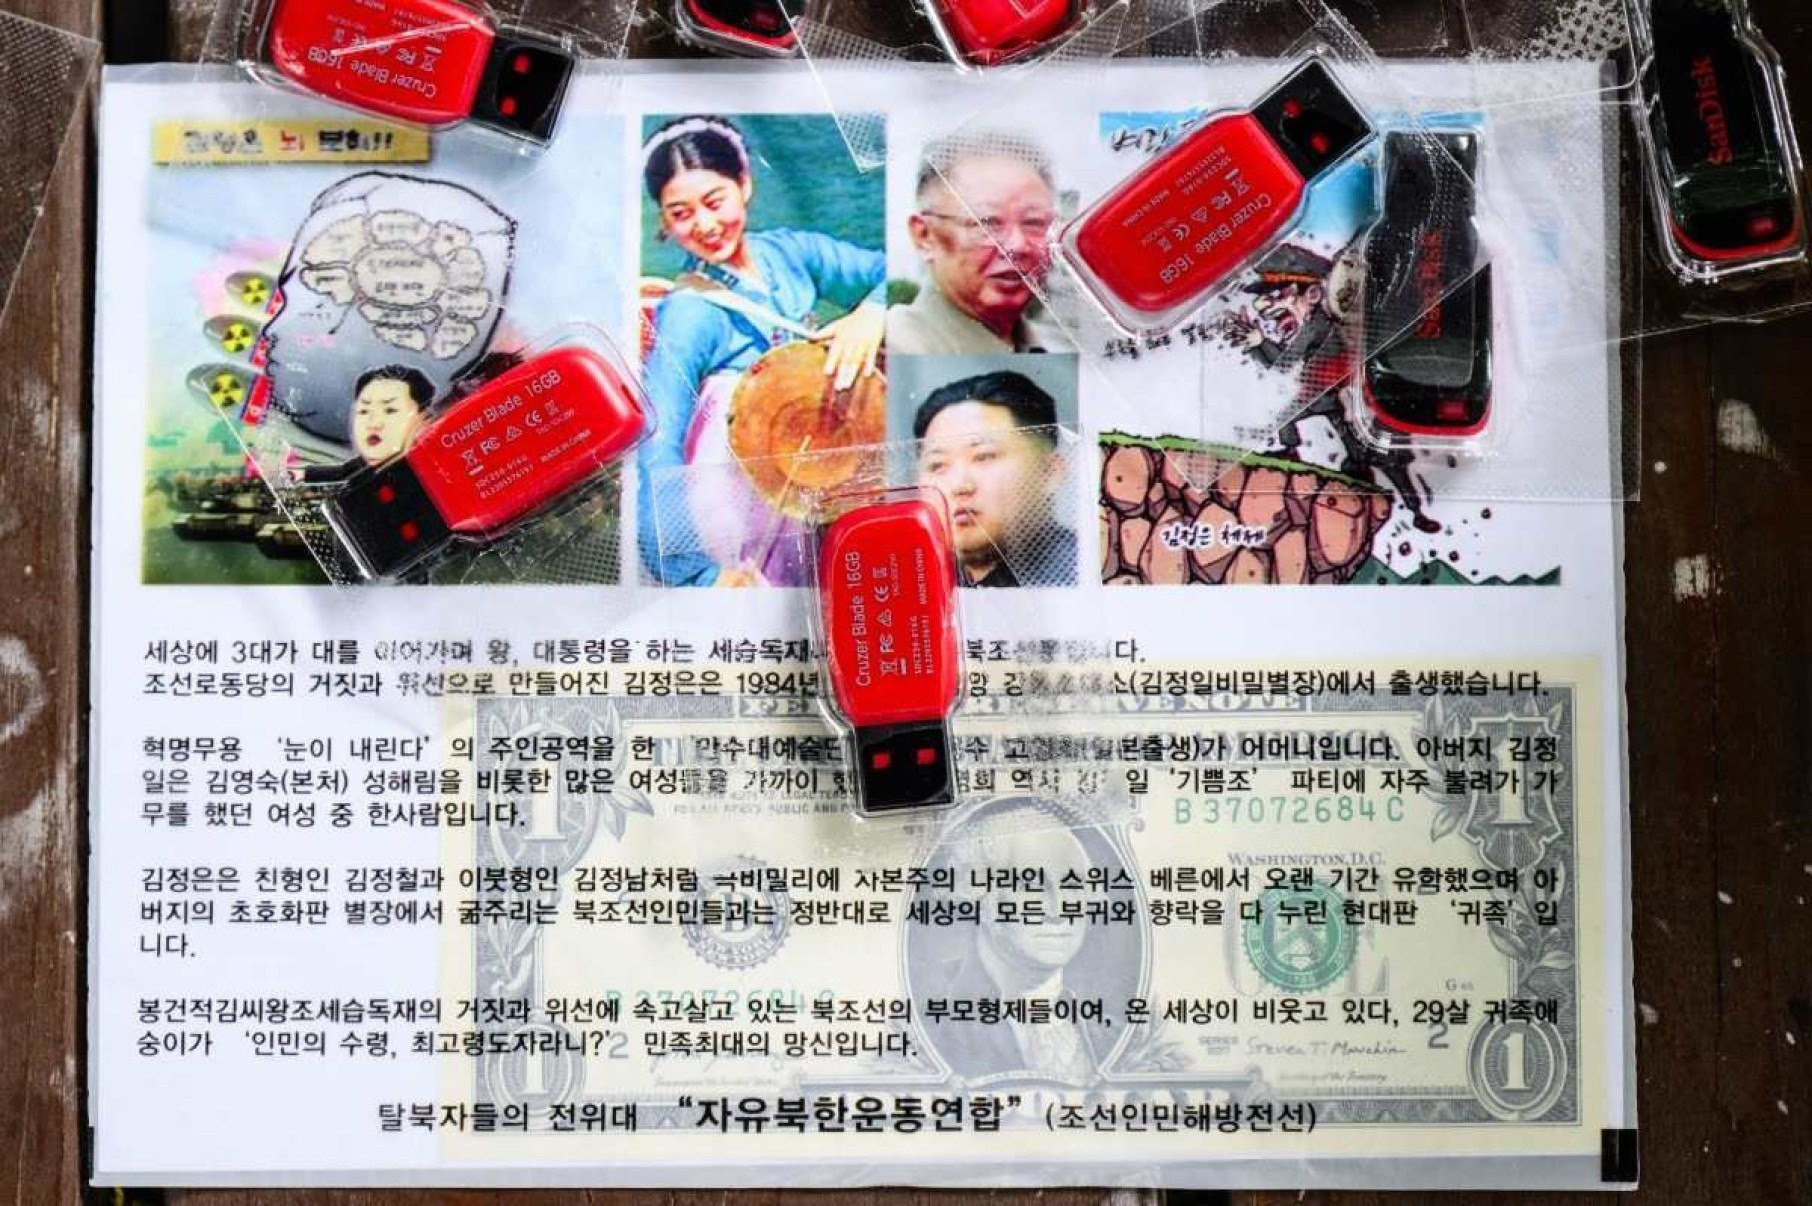     Um folheto contendo uma nota de dólar americano, em drives USB de K-pop, é visto durante uma entrevista da AFP com o desertor norte-coreano Park Sang-hak em Seul, em 25 de junho de 2024. Park considera os balões de propaganda que ele faz flutuar em sua terra natal como sendo parte de uma tradição de guerra psicológica e promete continuar até a queda do regime de Kim Jong Un.  Filho de um agente duplo norte-coreano que fugiu do seu país em 1999, Park tem enviado balões carregados com folhetos de propaganda anti-regime, notas de dólares americanos e unidades USB de K-pop através da fronteira há quase 20 anos.  (Foto de Anthony WALLACE / AFP) / Para acompanhar 'SKOREA-NKOREA-DIPLOMACY-CONFLICT, PROFILE' de Kang Jin-kyu e Cat Barton Legenda 